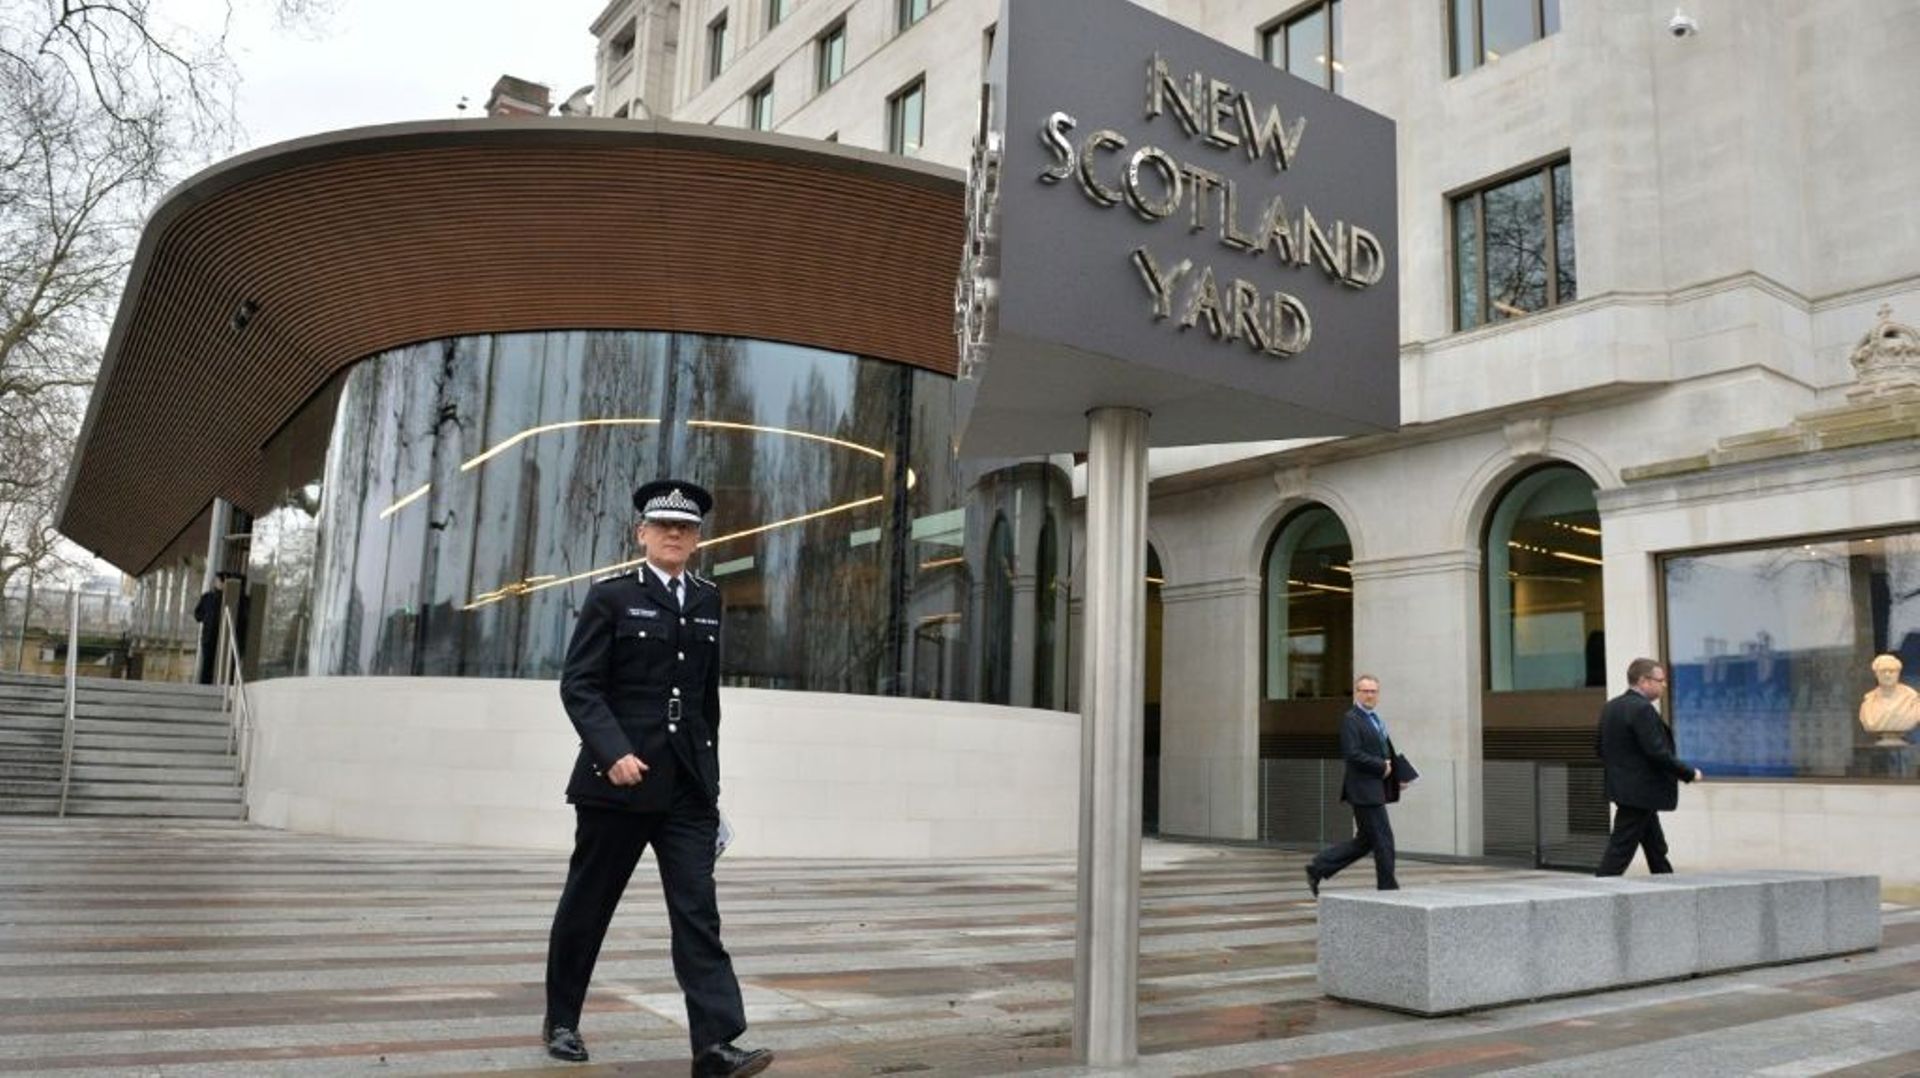 La police de Londres a été la cible dans la nuit de vendredi à samedi de pirates informatiques qui ont utilisé son compte Twitter et sa messagerie électronique pour diffuser des messages énigmatiques ou injurieux